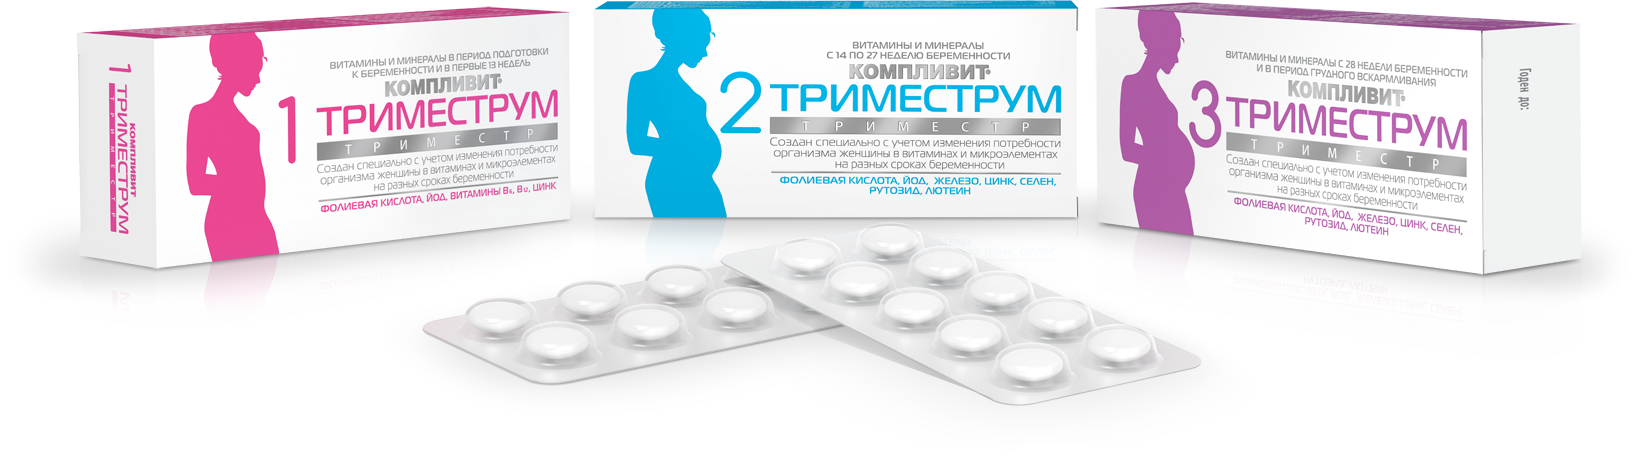 Компливит витамины для беременных 1 триместр. Компливит Триместрум 1 состав. Триместрум витамины для беременных. Таблетки для беременных 1 триместр витамины. Пила во время беременности на ранних сроках